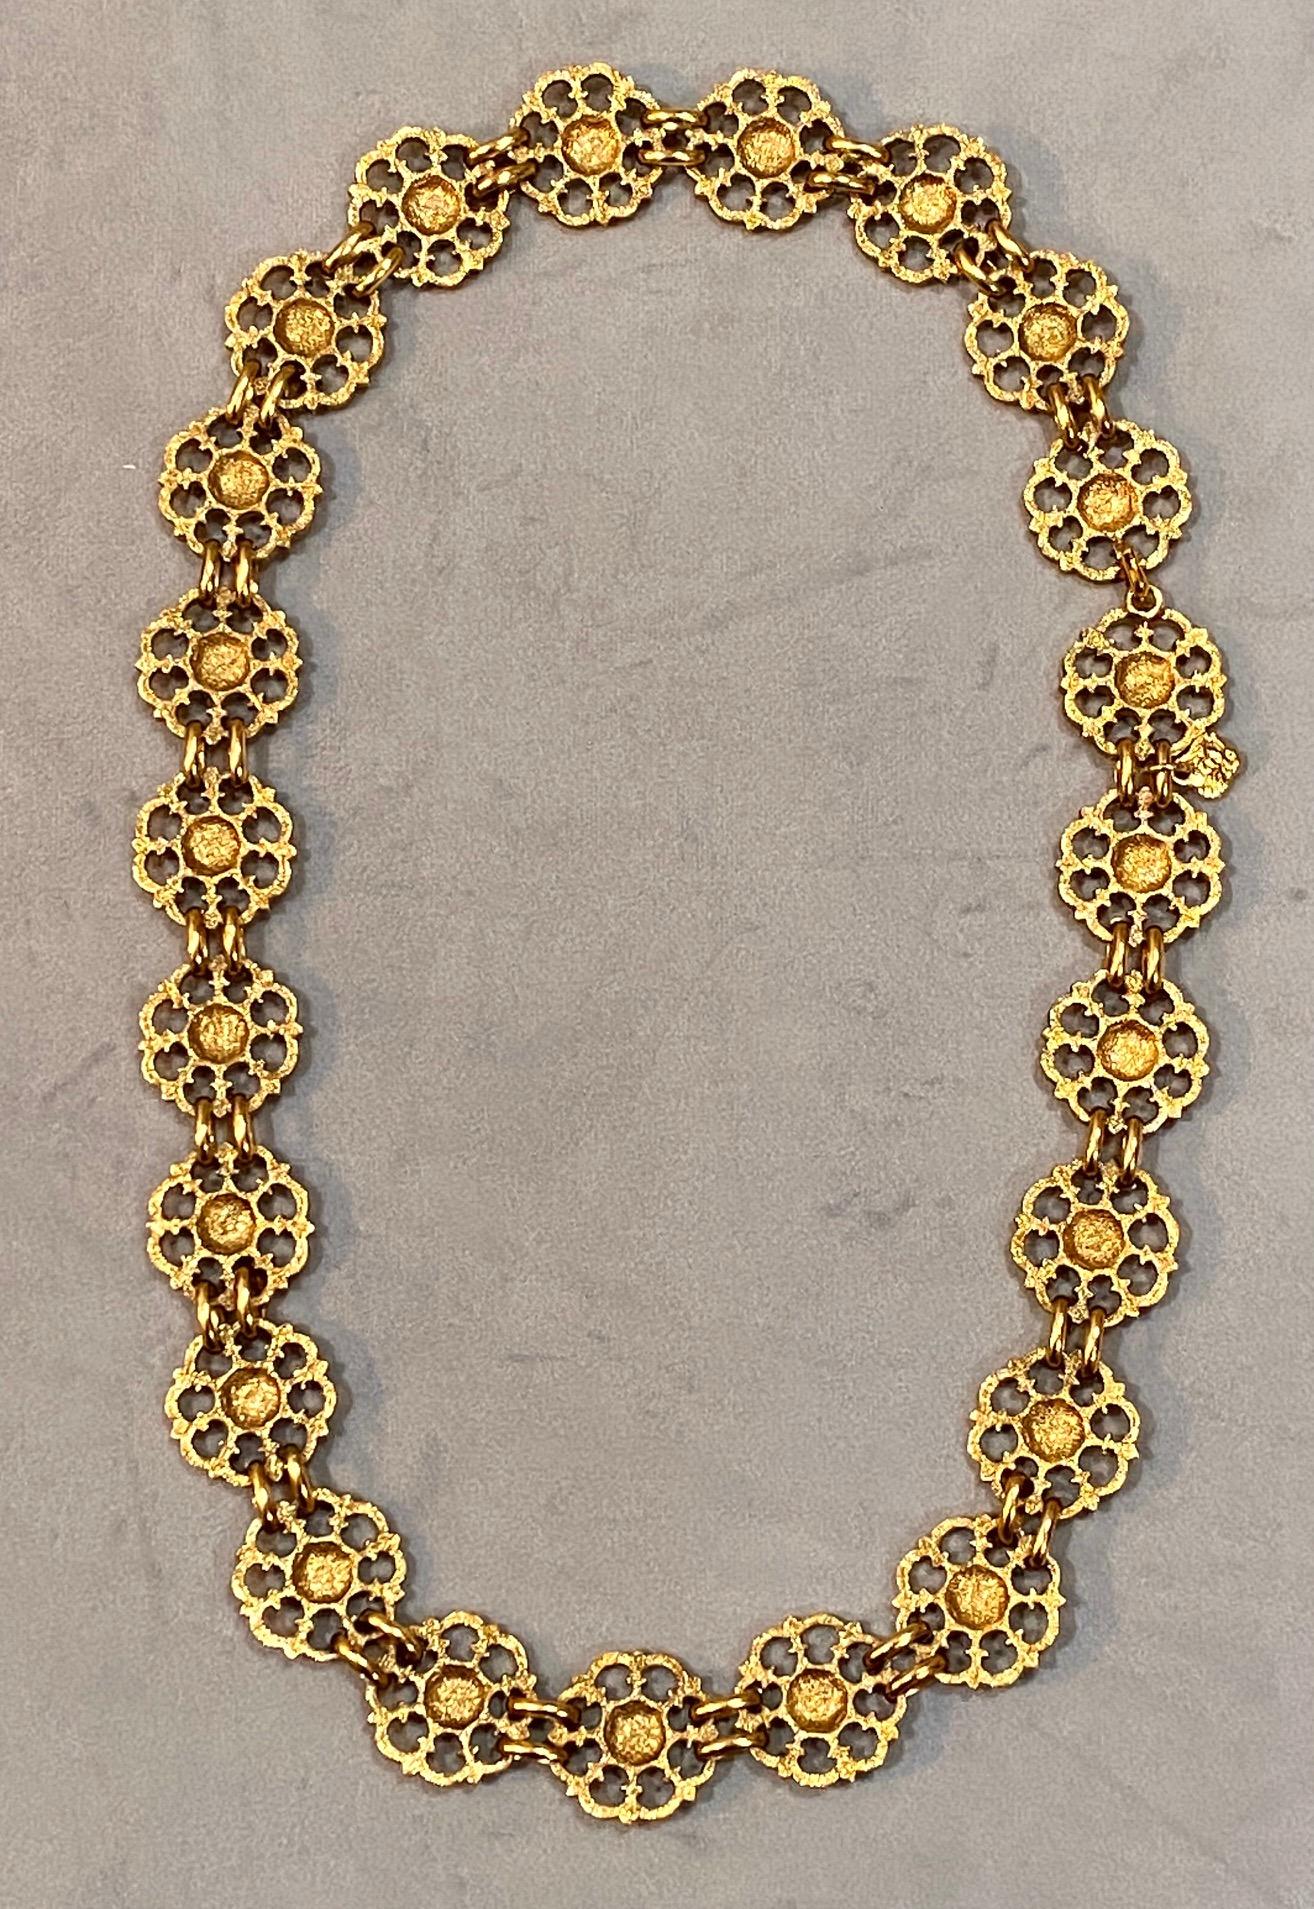 Yves Saint Laurent, Rive Gauche, 1980s Gold Belt / Necklace For Sale 11